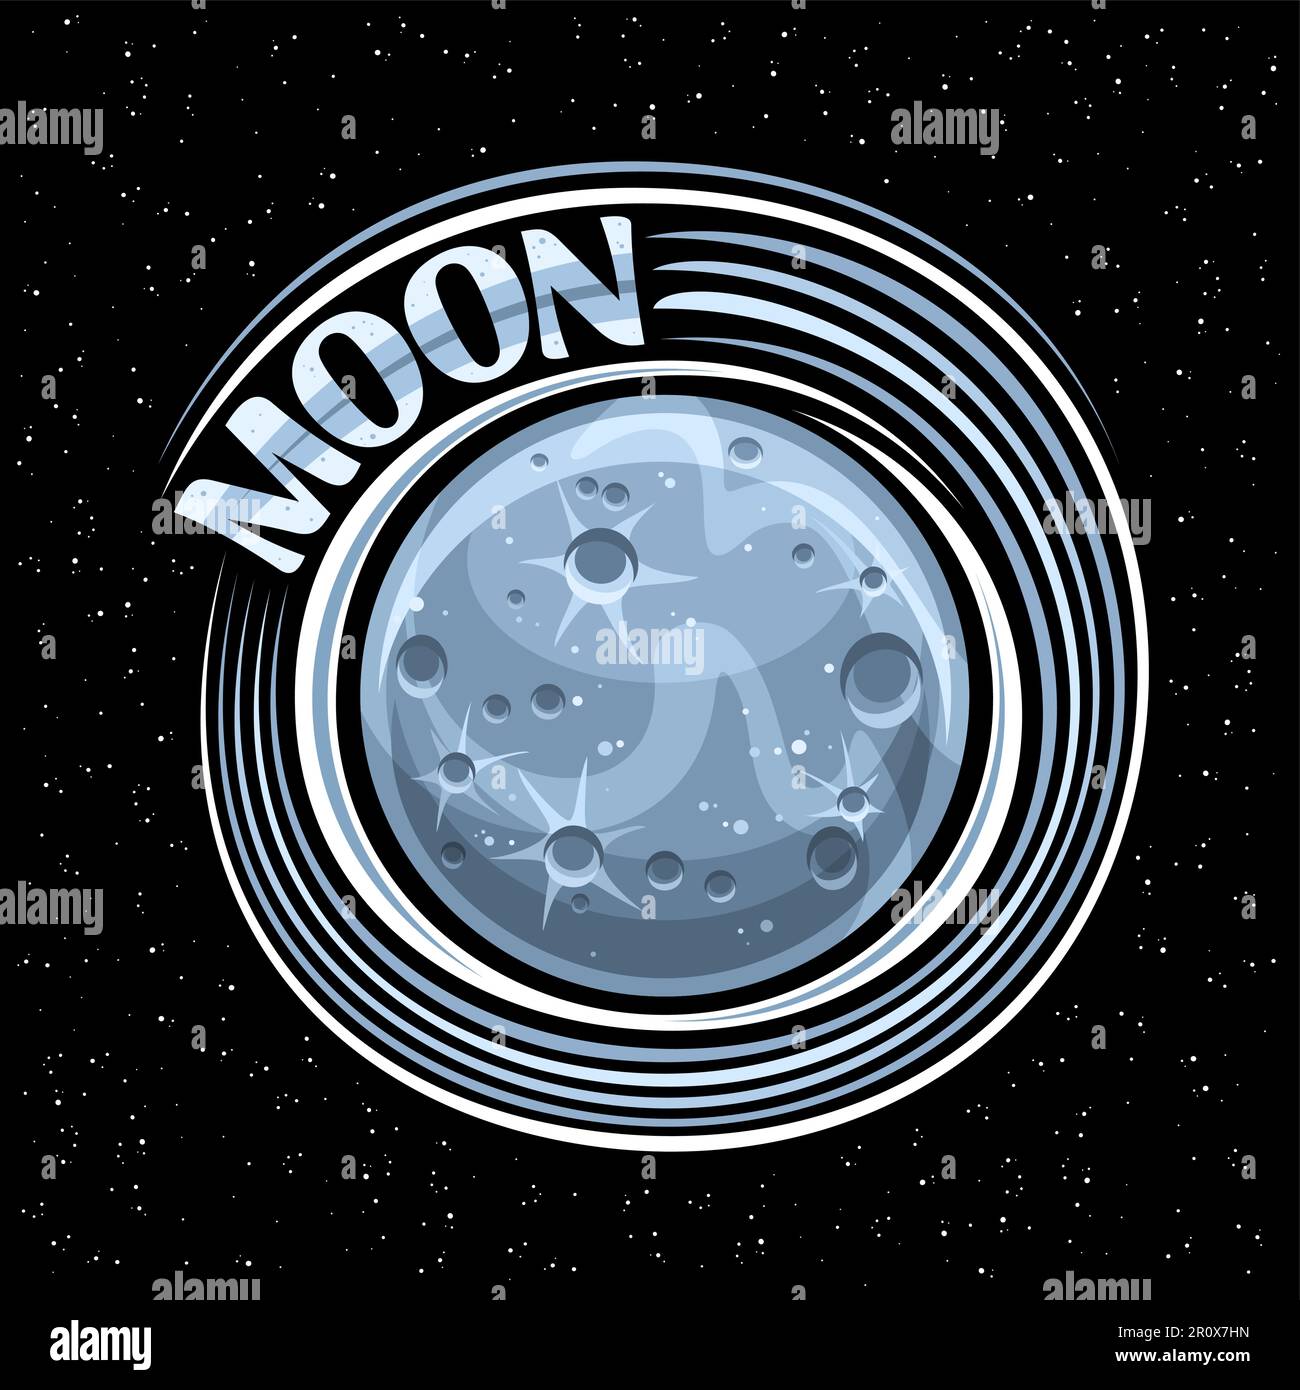 Vektorlogo für Moon, Fantasy cosmo-Aufdruck mit rotierendem Steinsatelliten, Planet Mond-Oberfläche mit Kratern und Bergen, dekoratives Schild mit einzigartigem le Stock Vektor